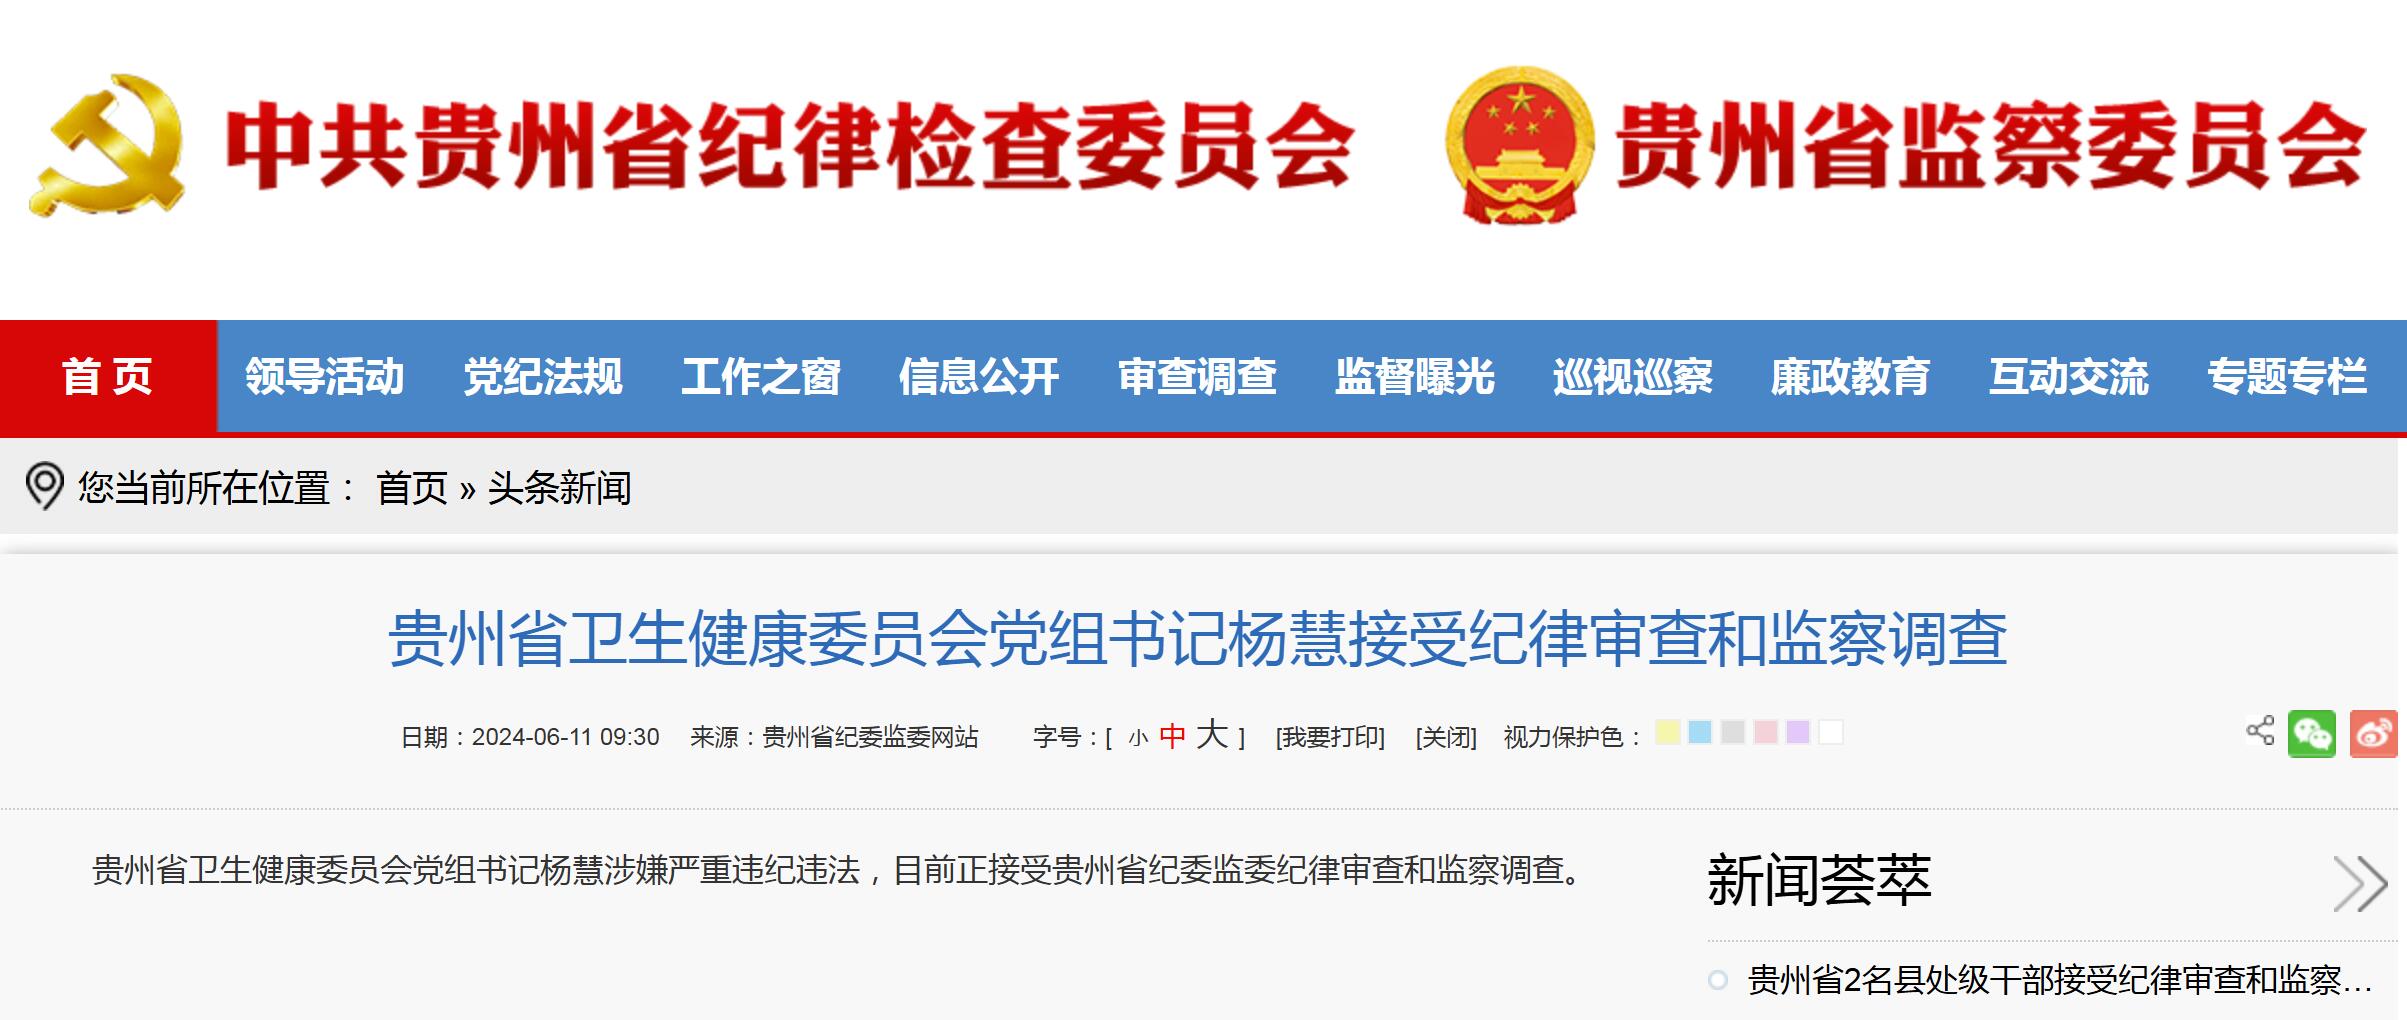 贵州省卫生健康委党组书记杨慧正接受纪律审查和监察调查